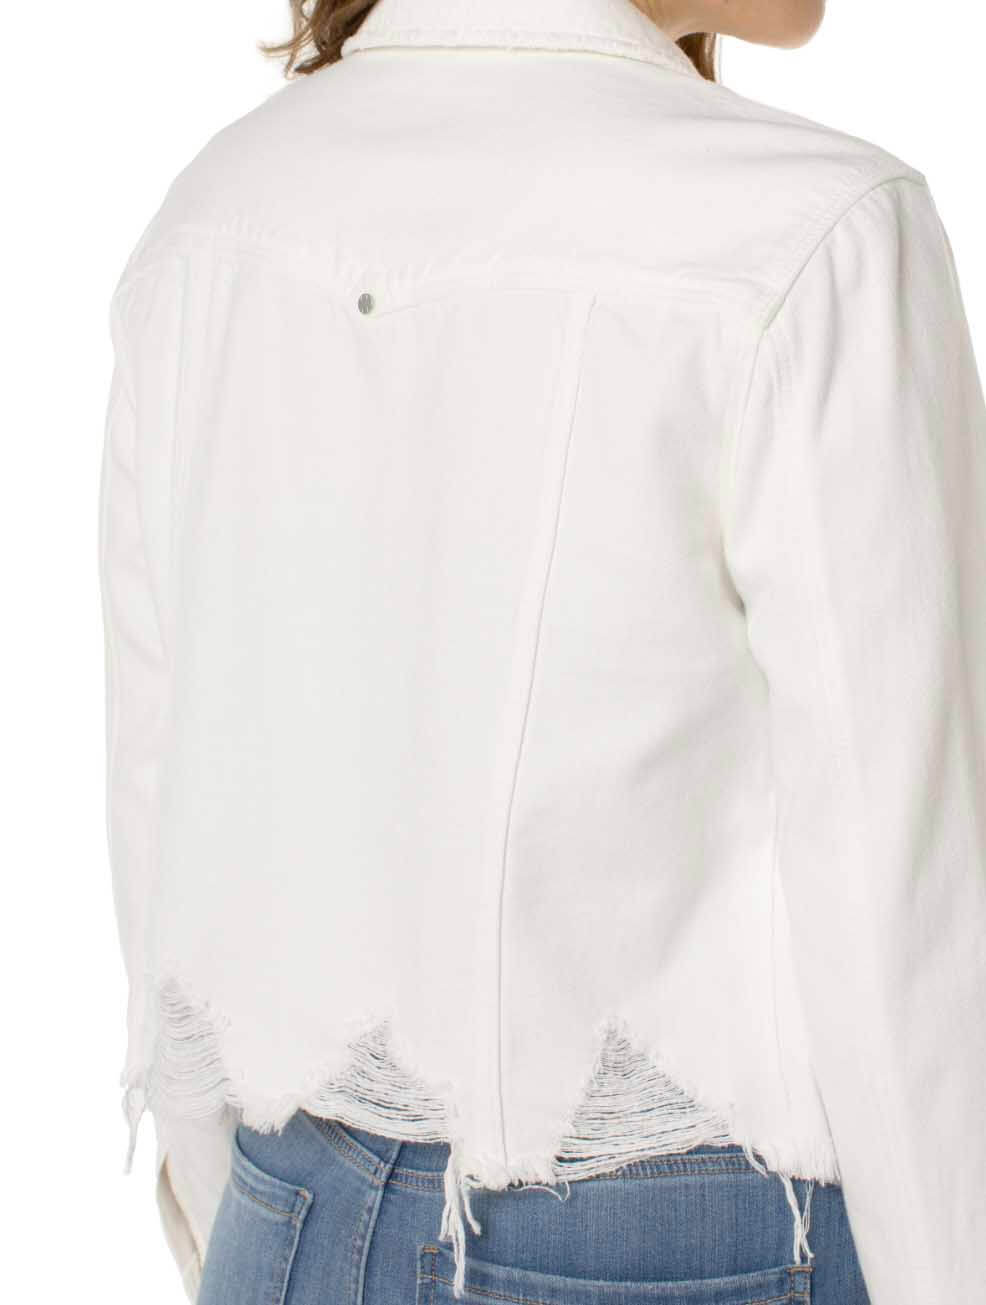 Liverpool Denim Jacket with Shredded Hem in Prairie White Des